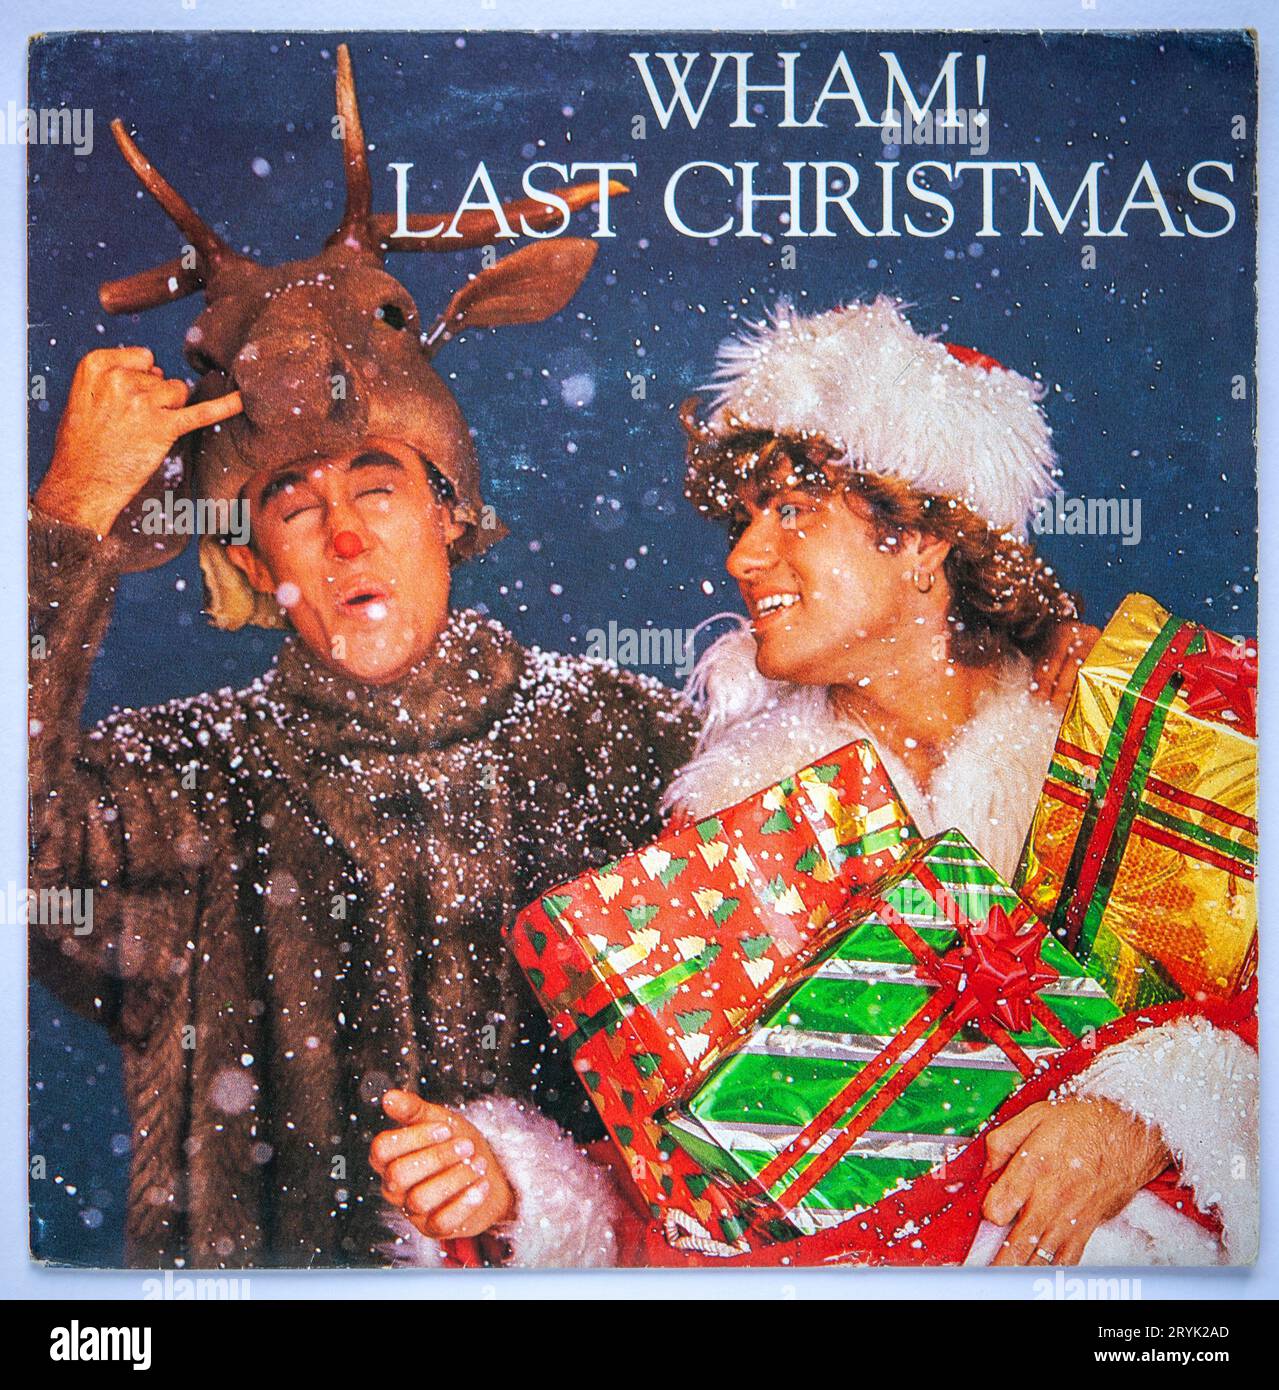 Das Cover der sieben-Zoll-Vinylversion von Last Christmas von Wham!, die ursprünglich 1984 veröffentlicht wurde Stockfoto